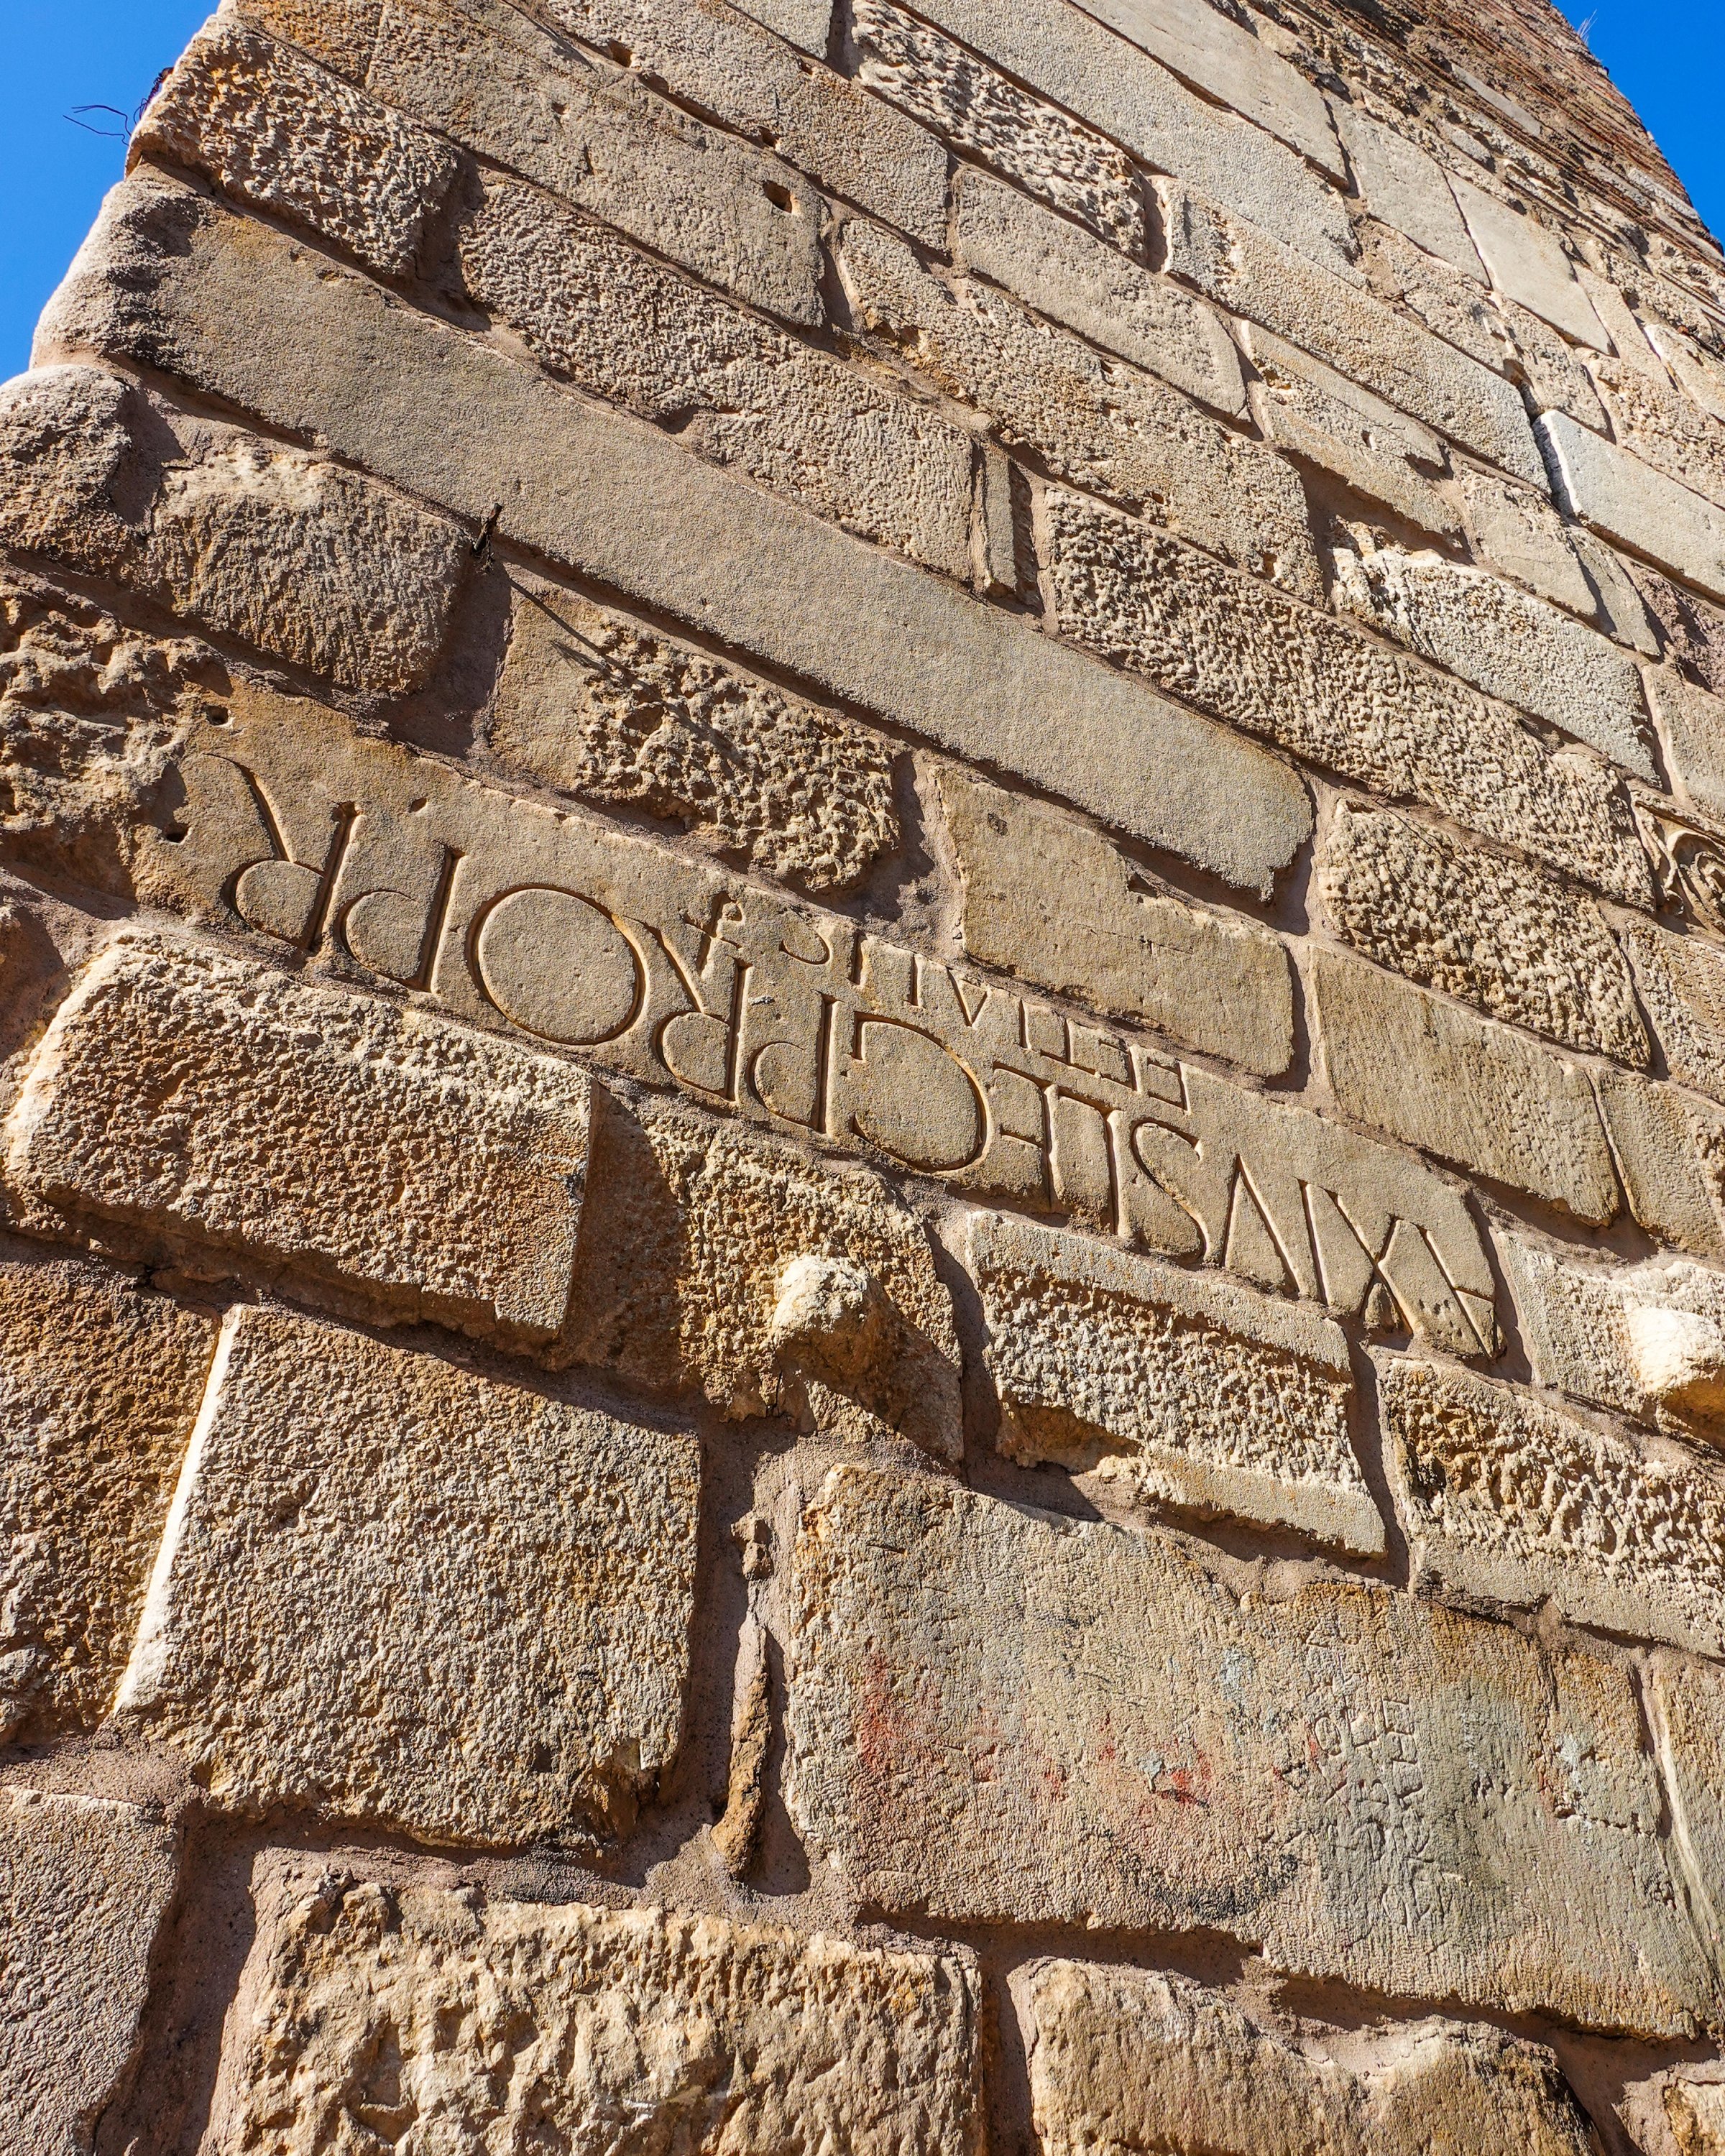   Un ancien bloc de pierre avec des inscriptions latines sur les murs de la citadelle.  (Photo par Argun Konuk)